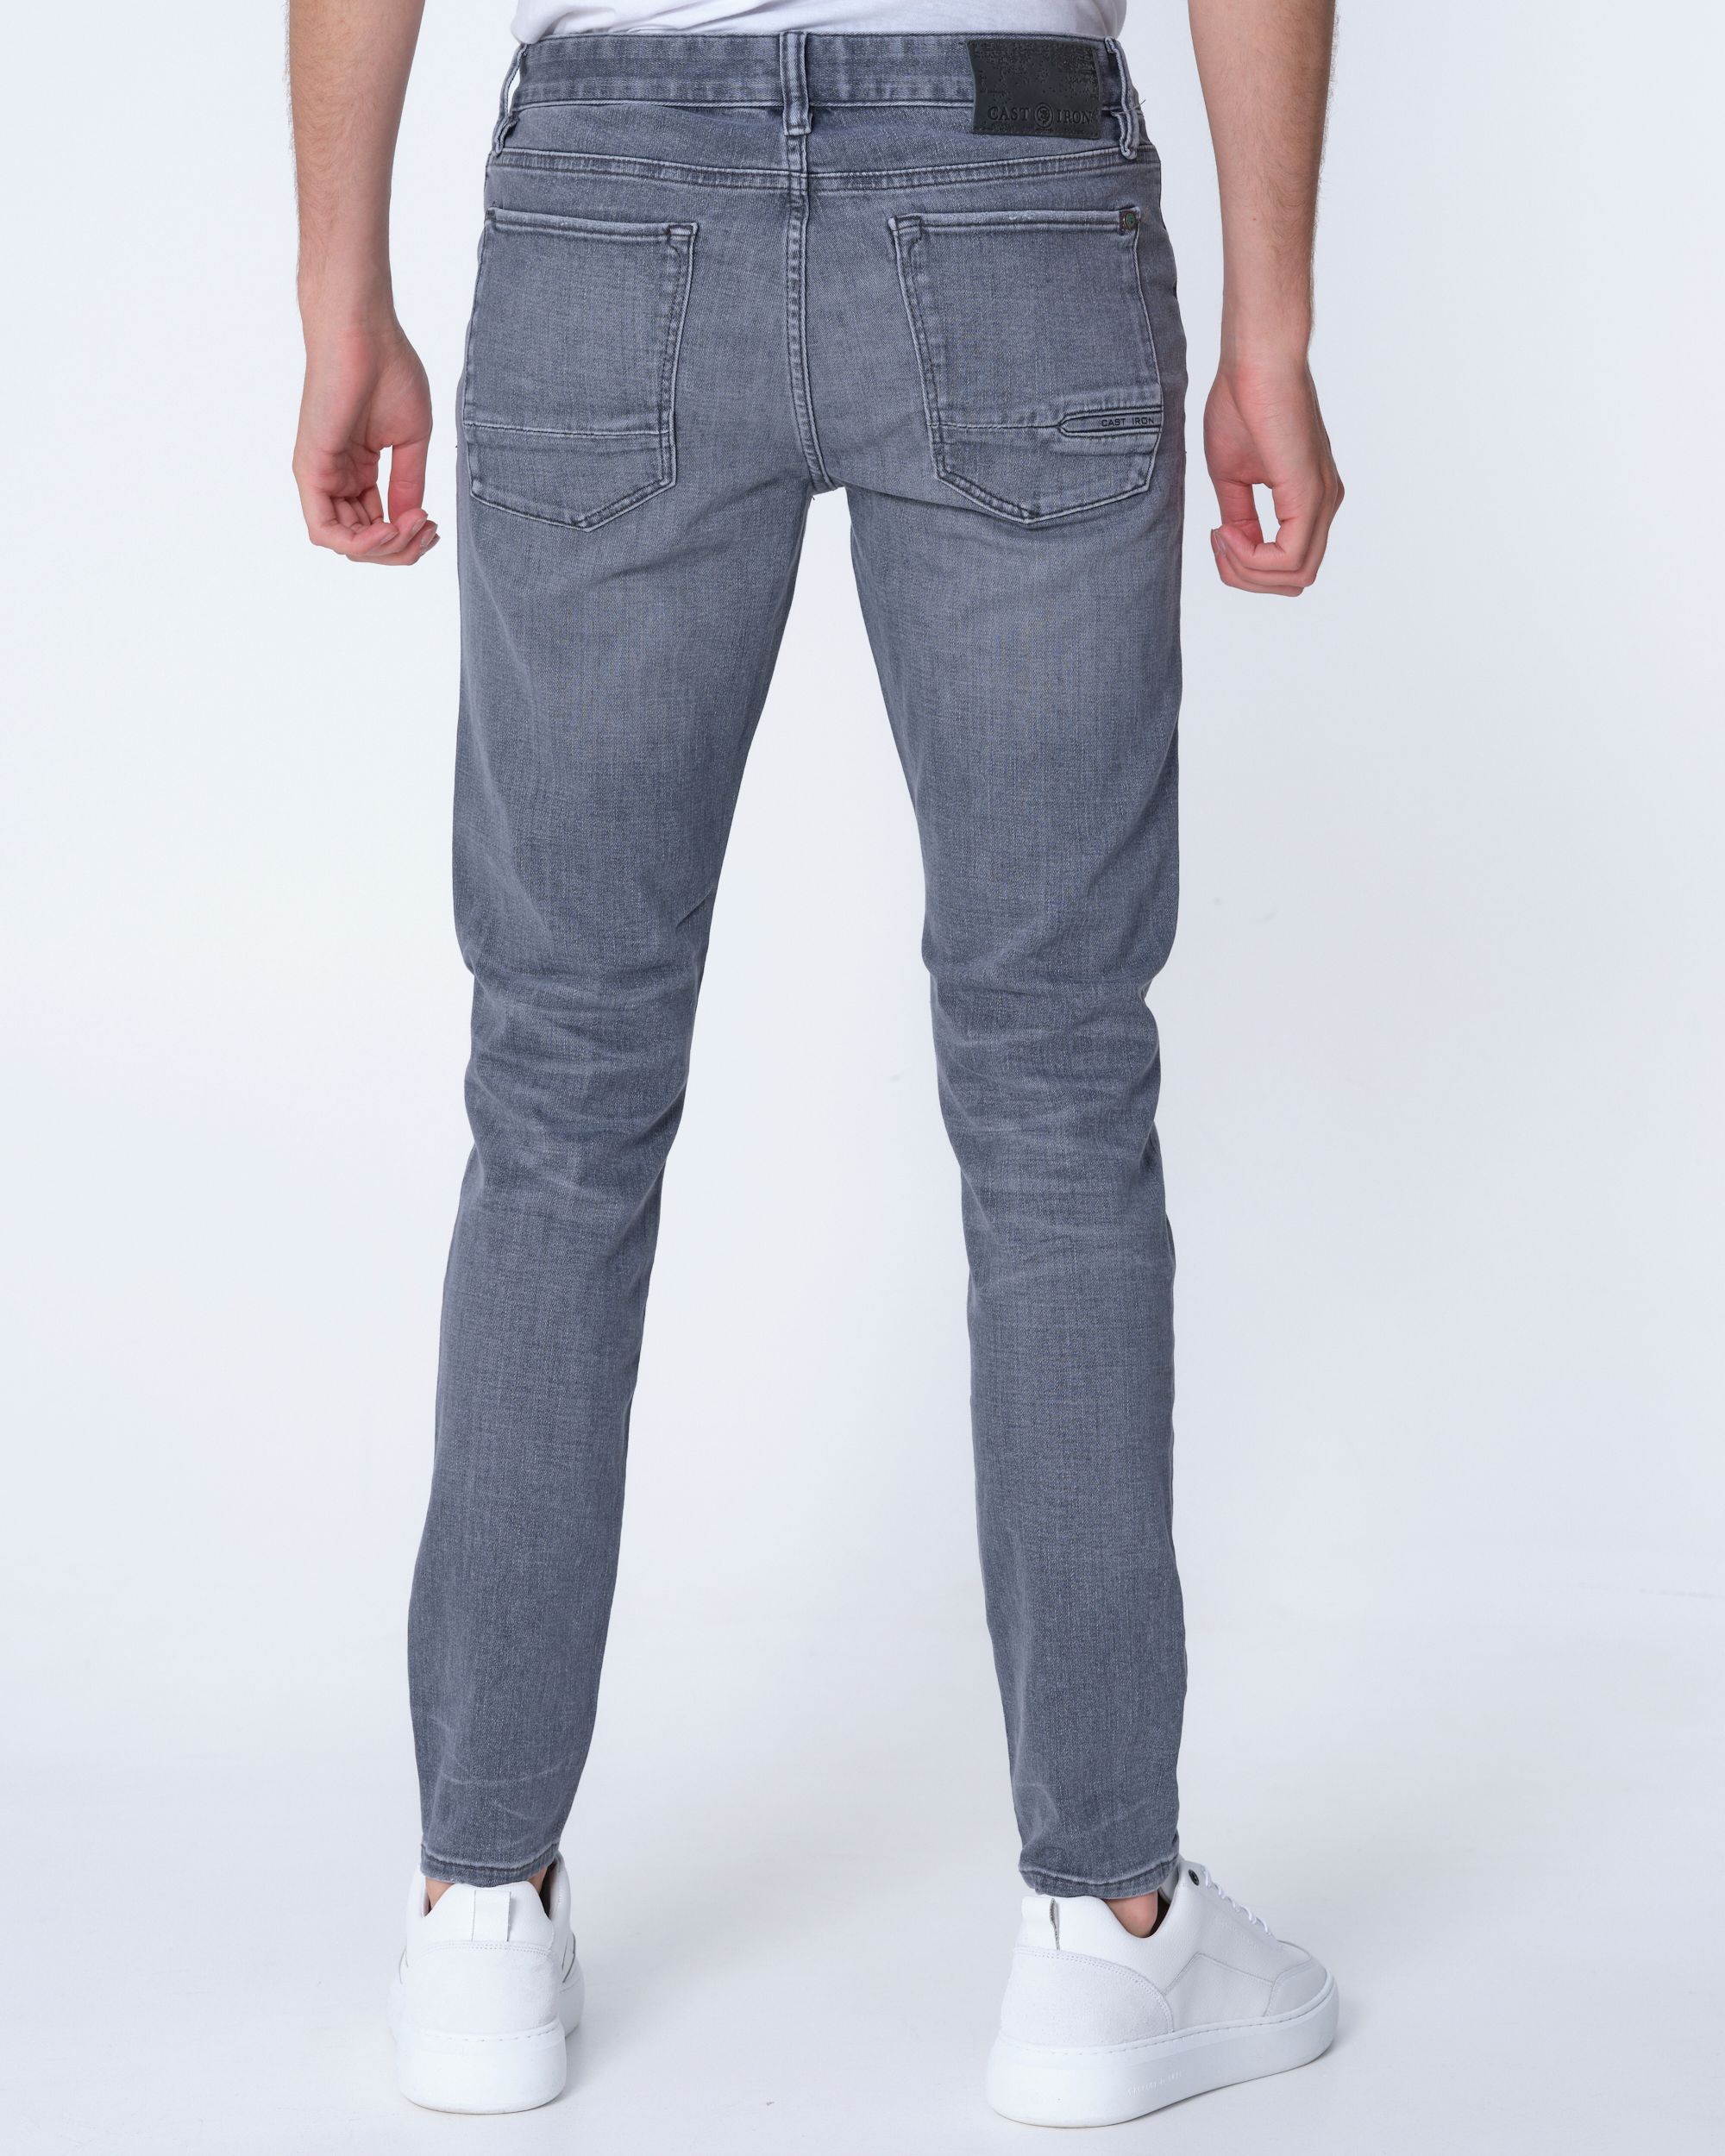 Cast Iron Riser Slim Fit Jeans  Grijs 062049-001-28/32